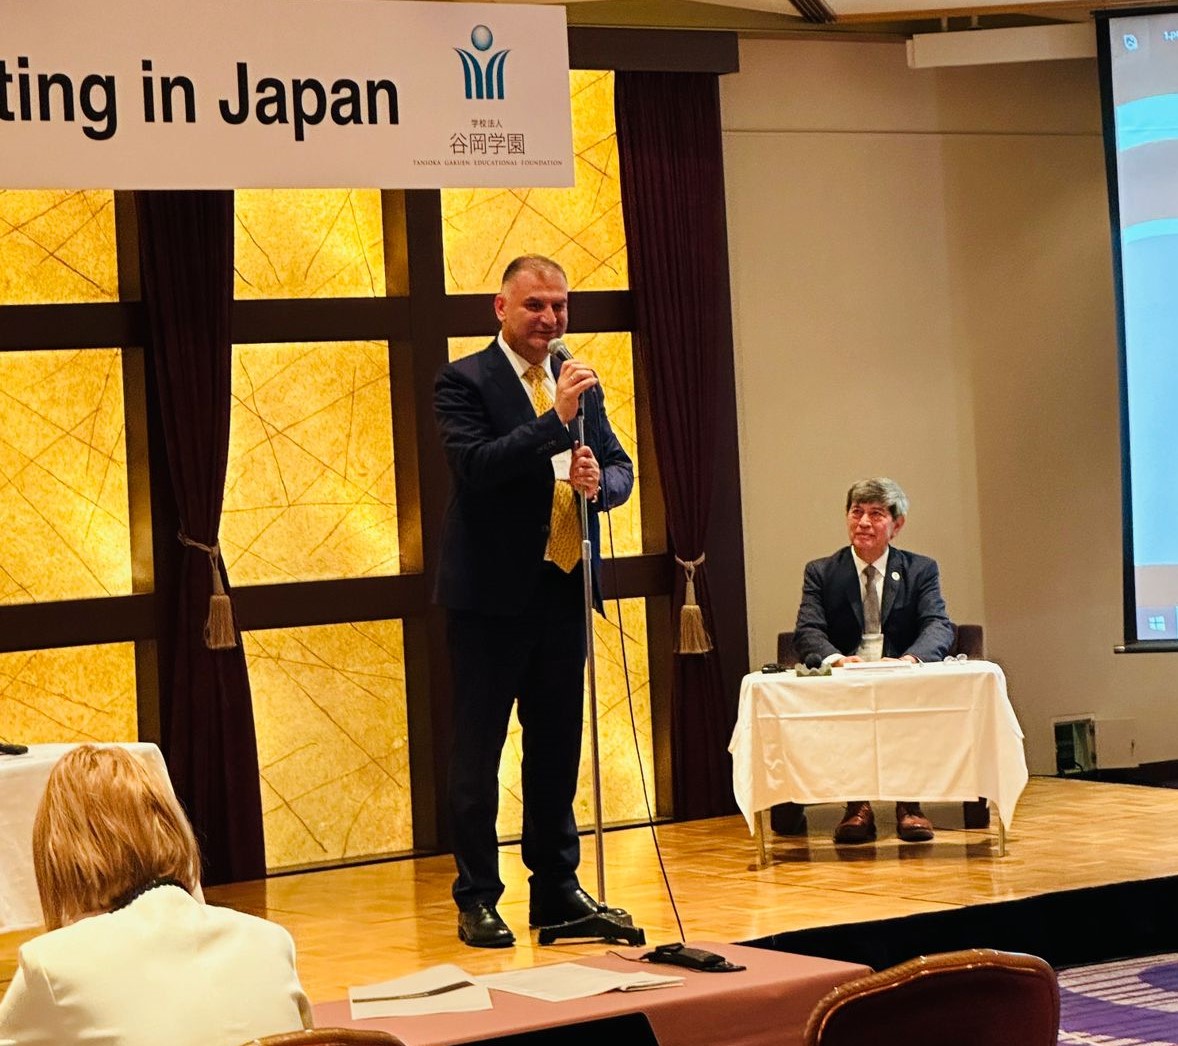 უნივერსიტეტთა პრეზიდენტების საერთაშორისო ასოციაციის (IAUP) წლიური კონფერენცია იაპონიაში